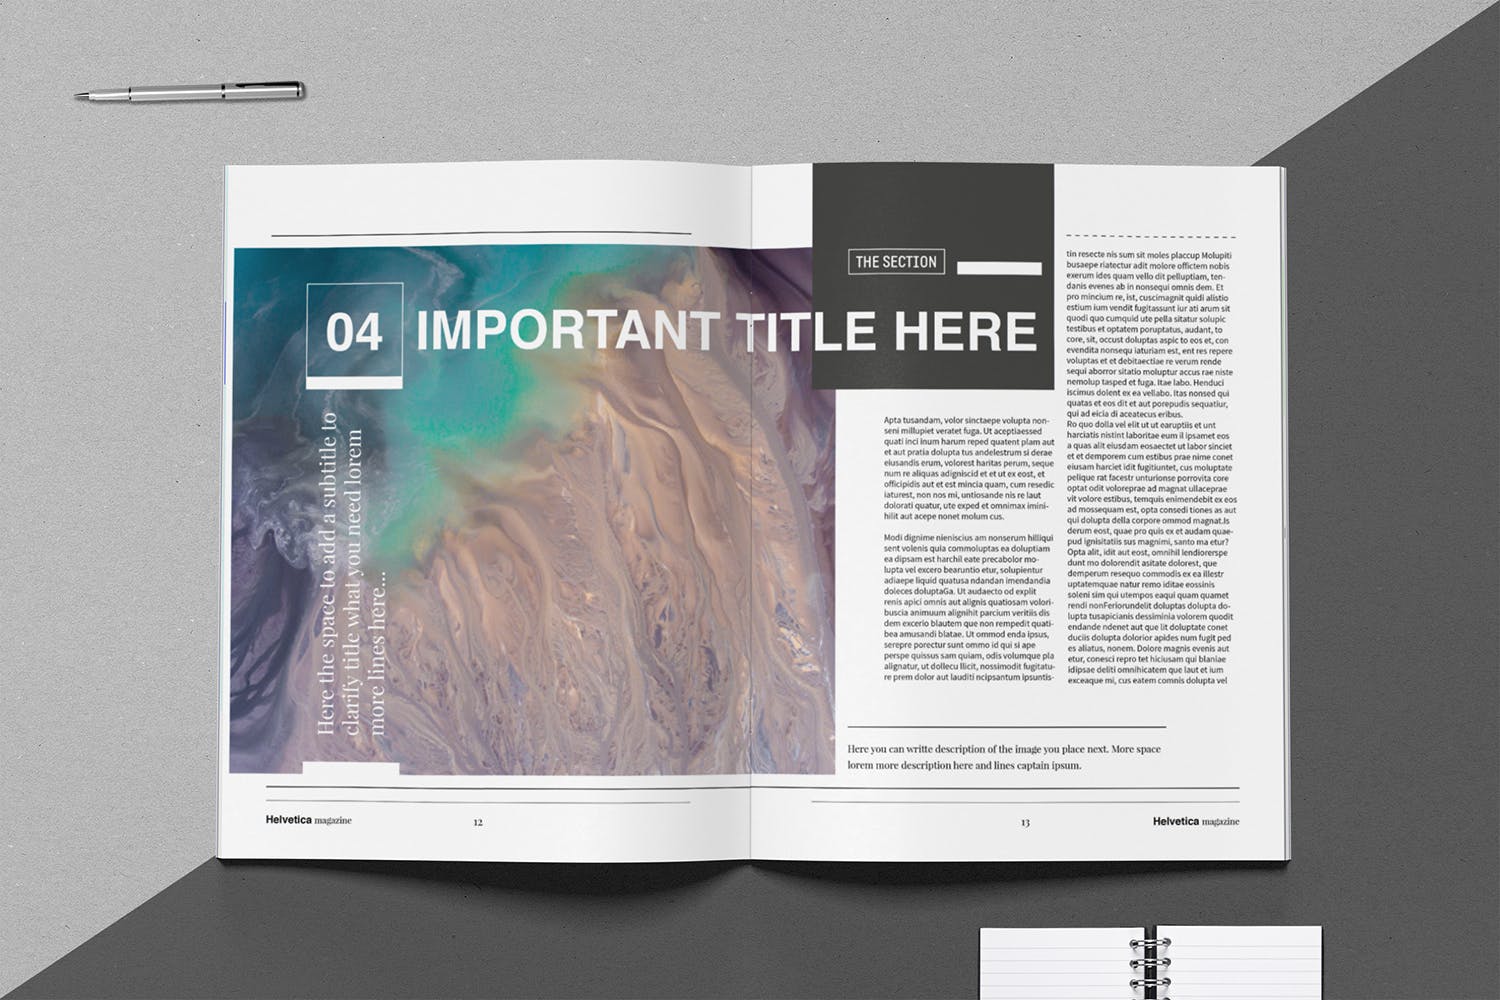 时尚行业产品评测杂志Indesign模板下载 Helvetica Magazine Indesign Template插图(7)